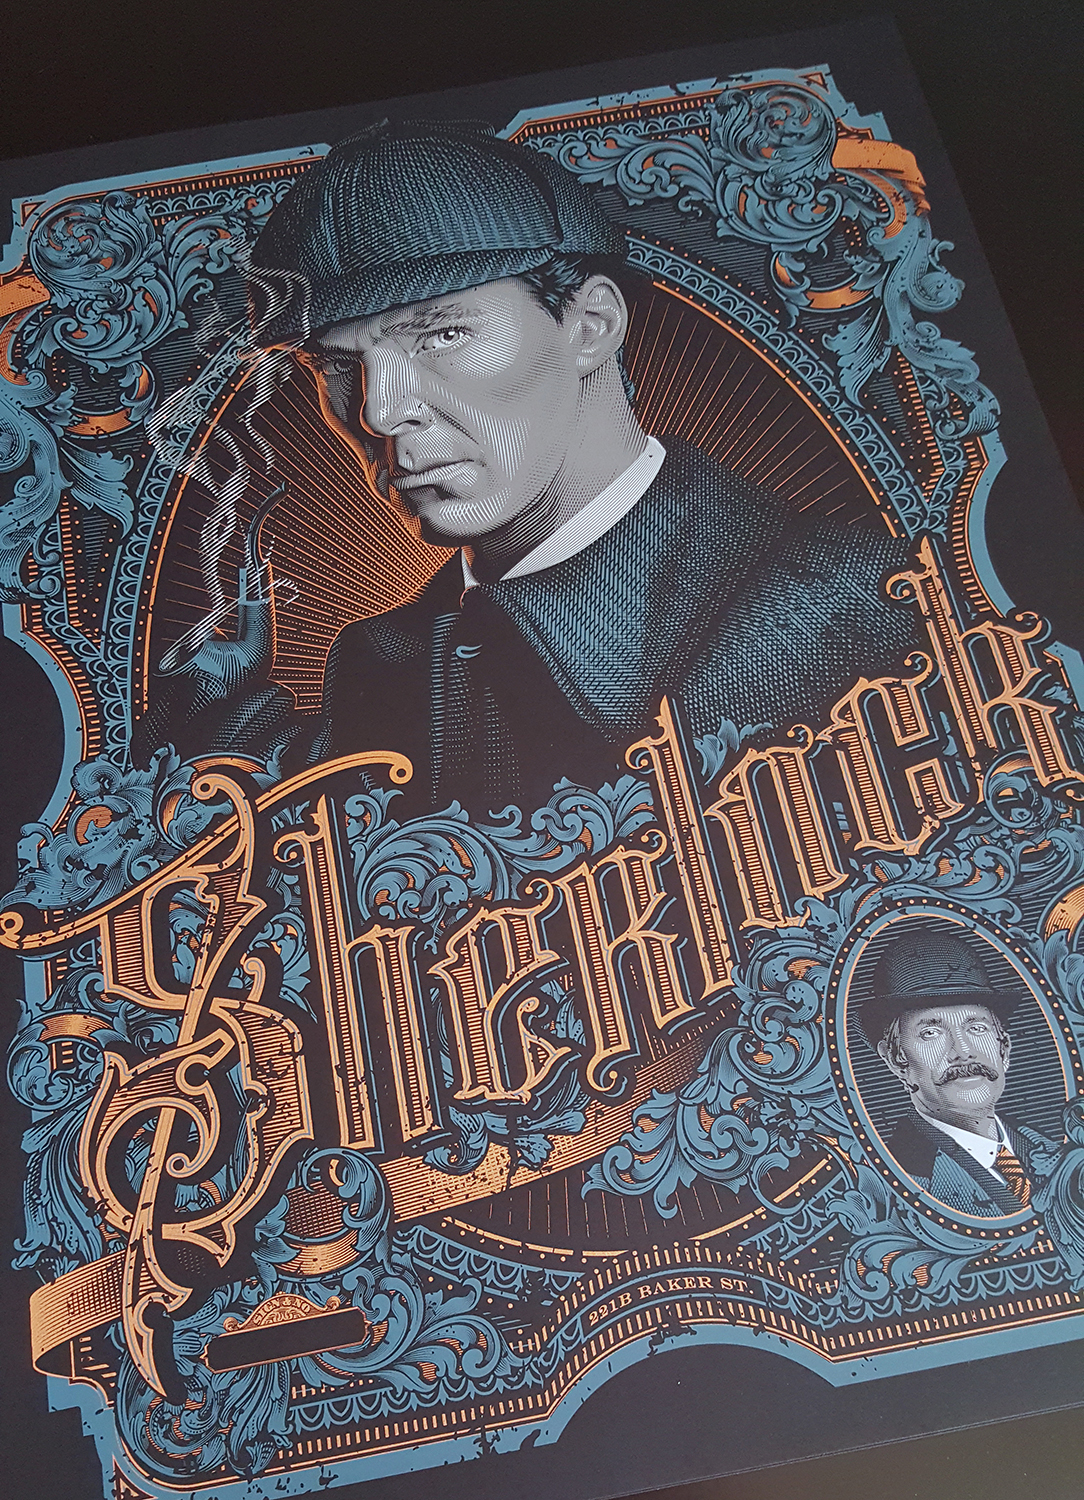 Sherlock Sherlocked BBC Benedict Cumberbatch cumberbatch Victorian antique Scrolling silk screen